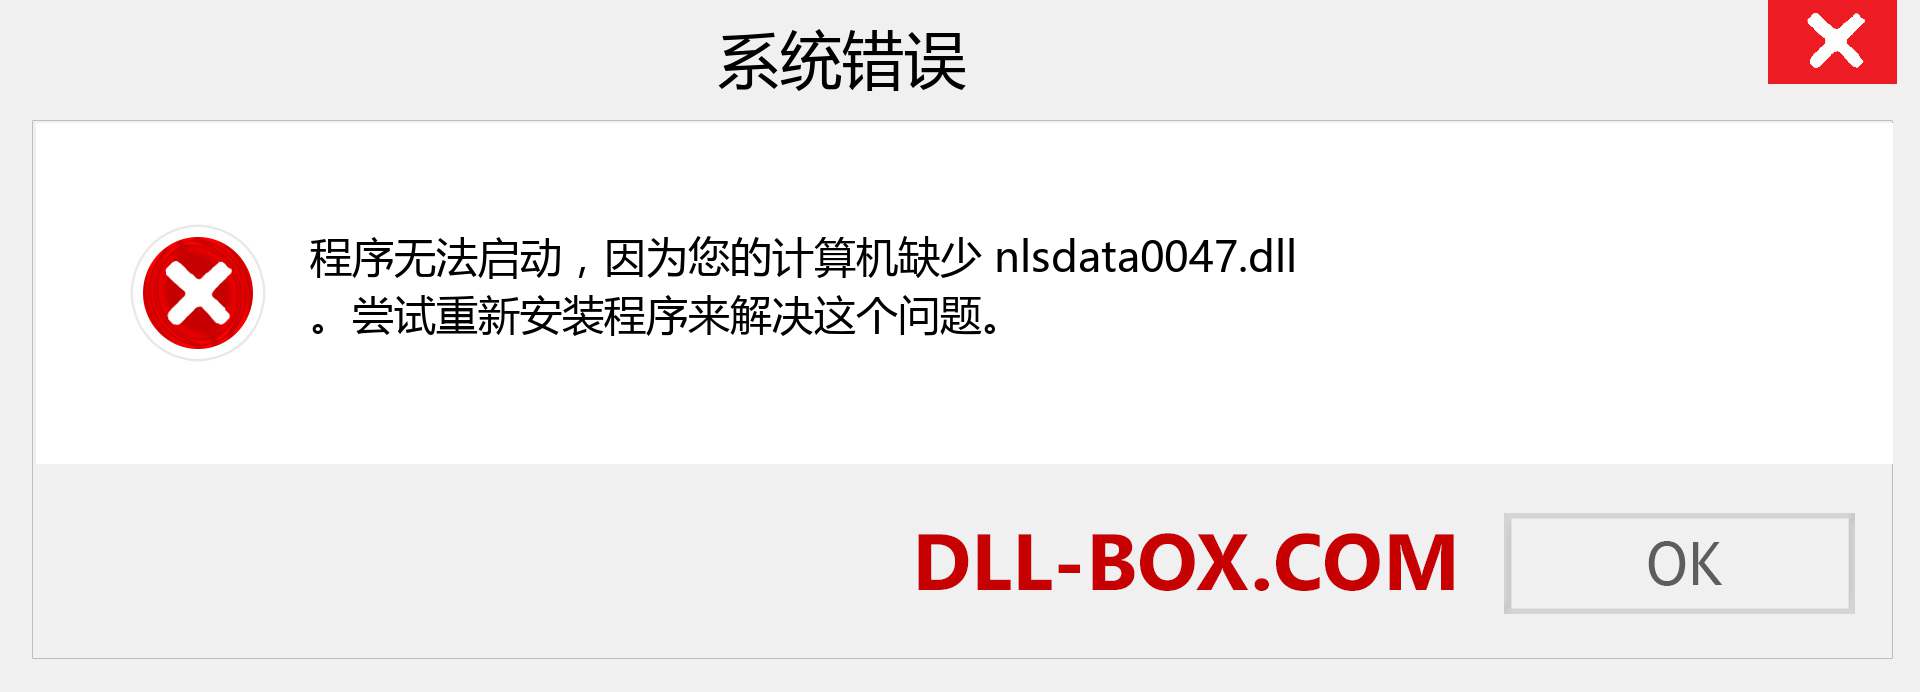 nlsdata0047.dll 文件丢失？。 适用于 Windows 7、8、10 的下载 - 修复 Windows、照片、图像上的 nlsdata0047 dll 丢失错误